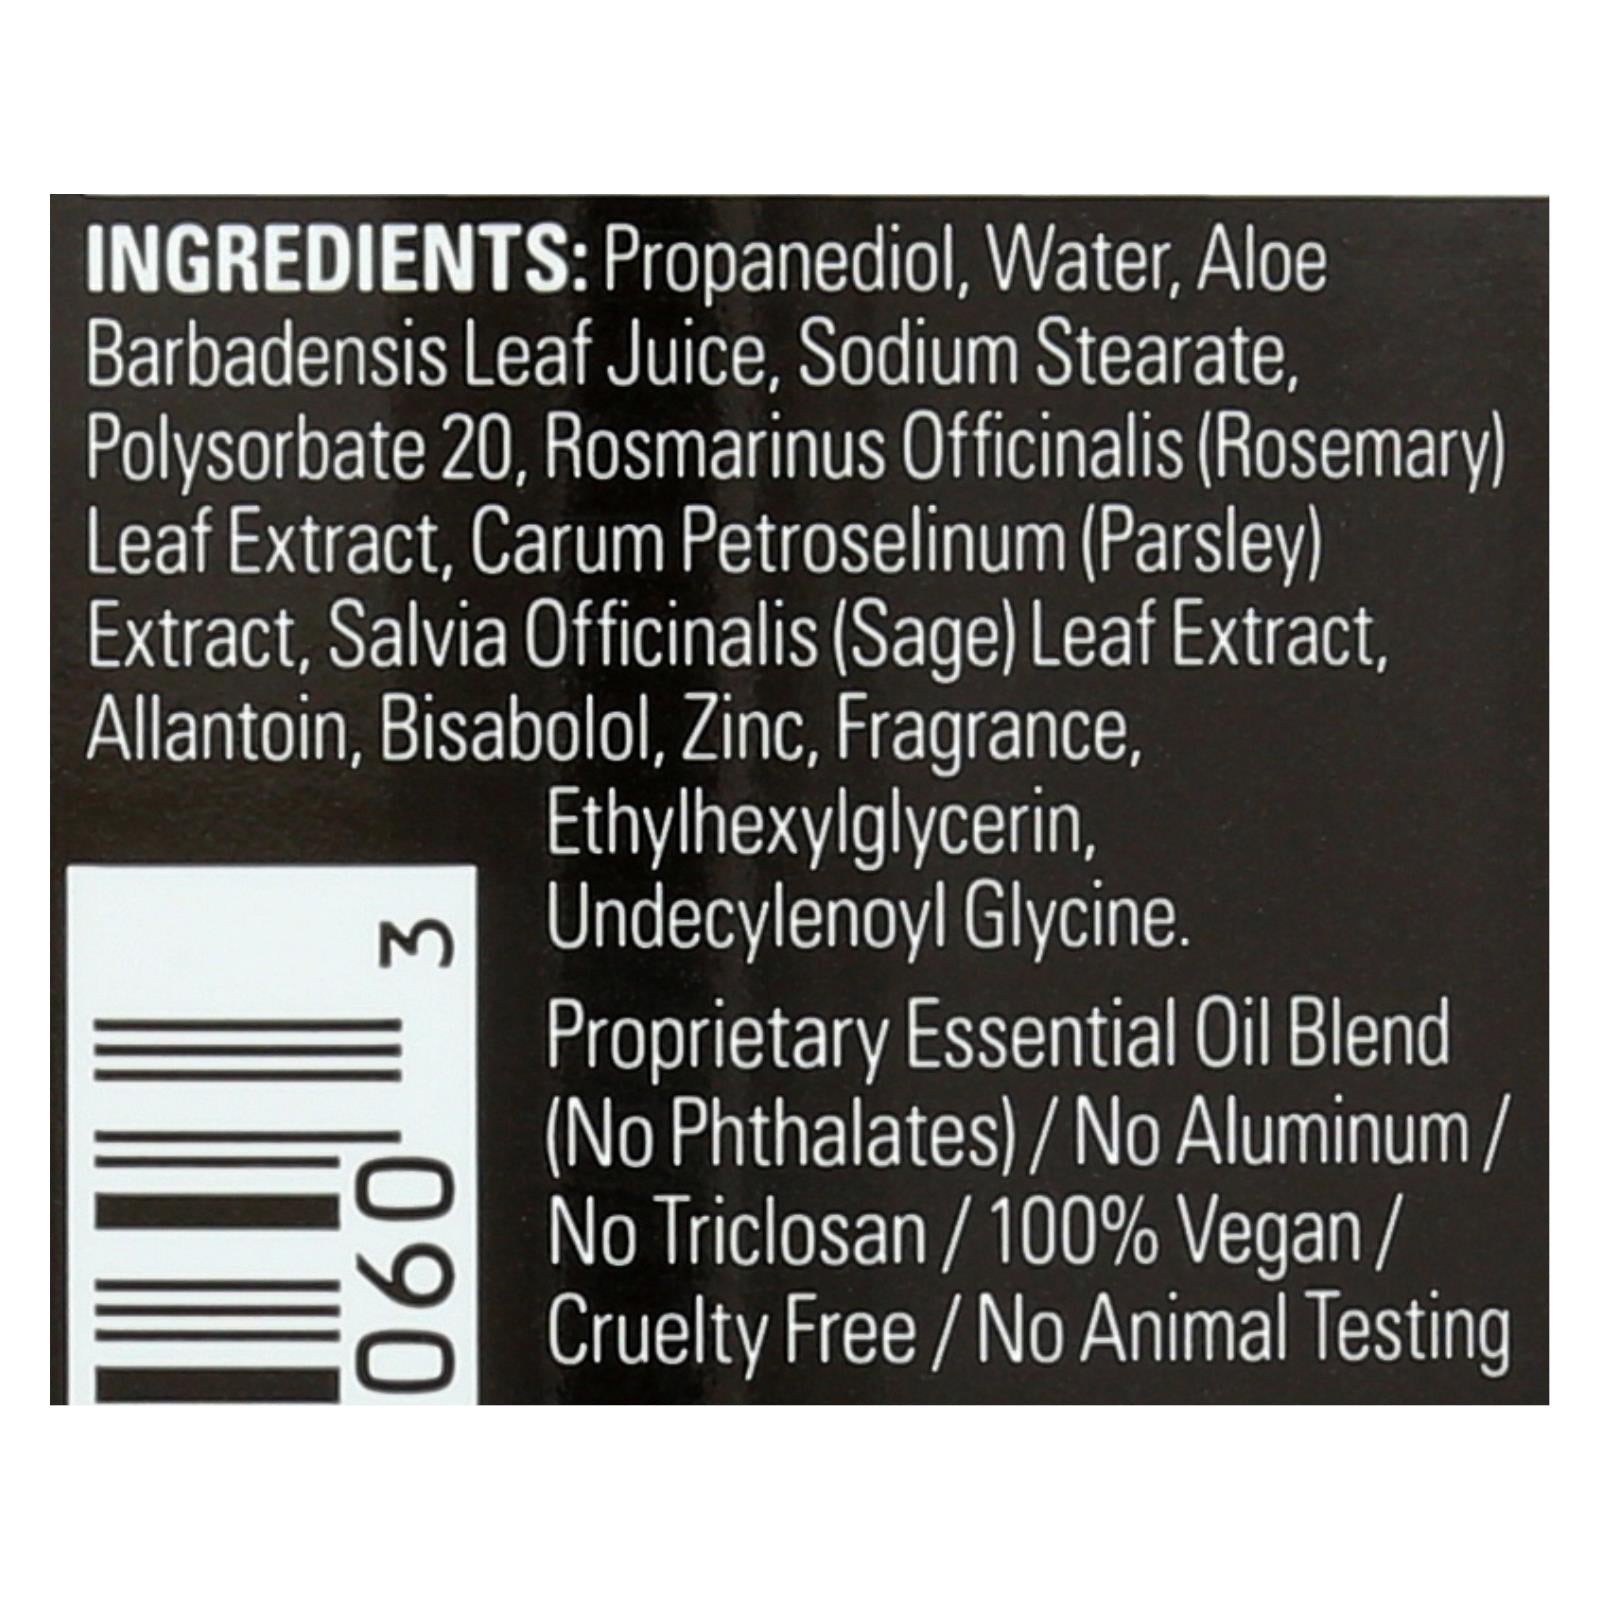 Herban Cowboy Deodorant Powder Scent - 2.8 oz